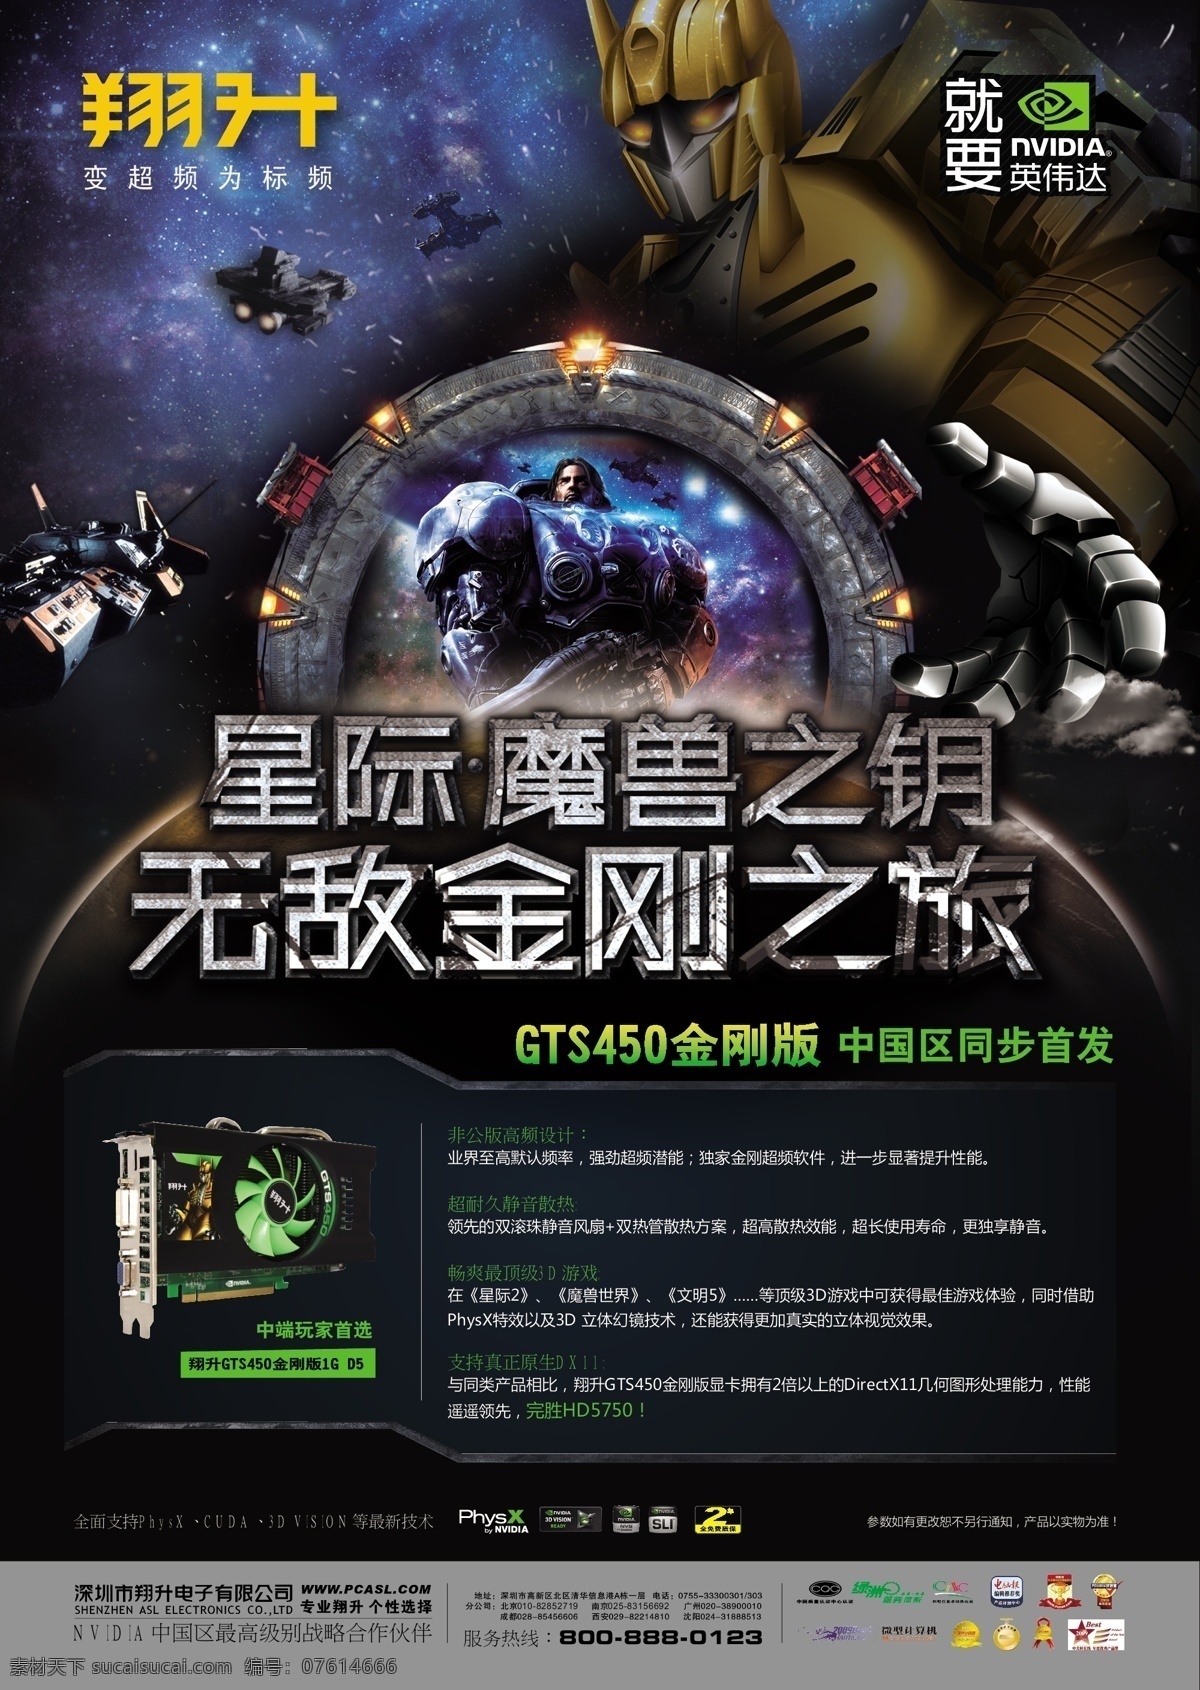 3d 电脑 飞机 机器 金刚 魔兽 显卡 星际 翔升 英伟达 机枪兵 钥匙 中国首发 星空 展板 海报 游戏 矢量 其他海报设计